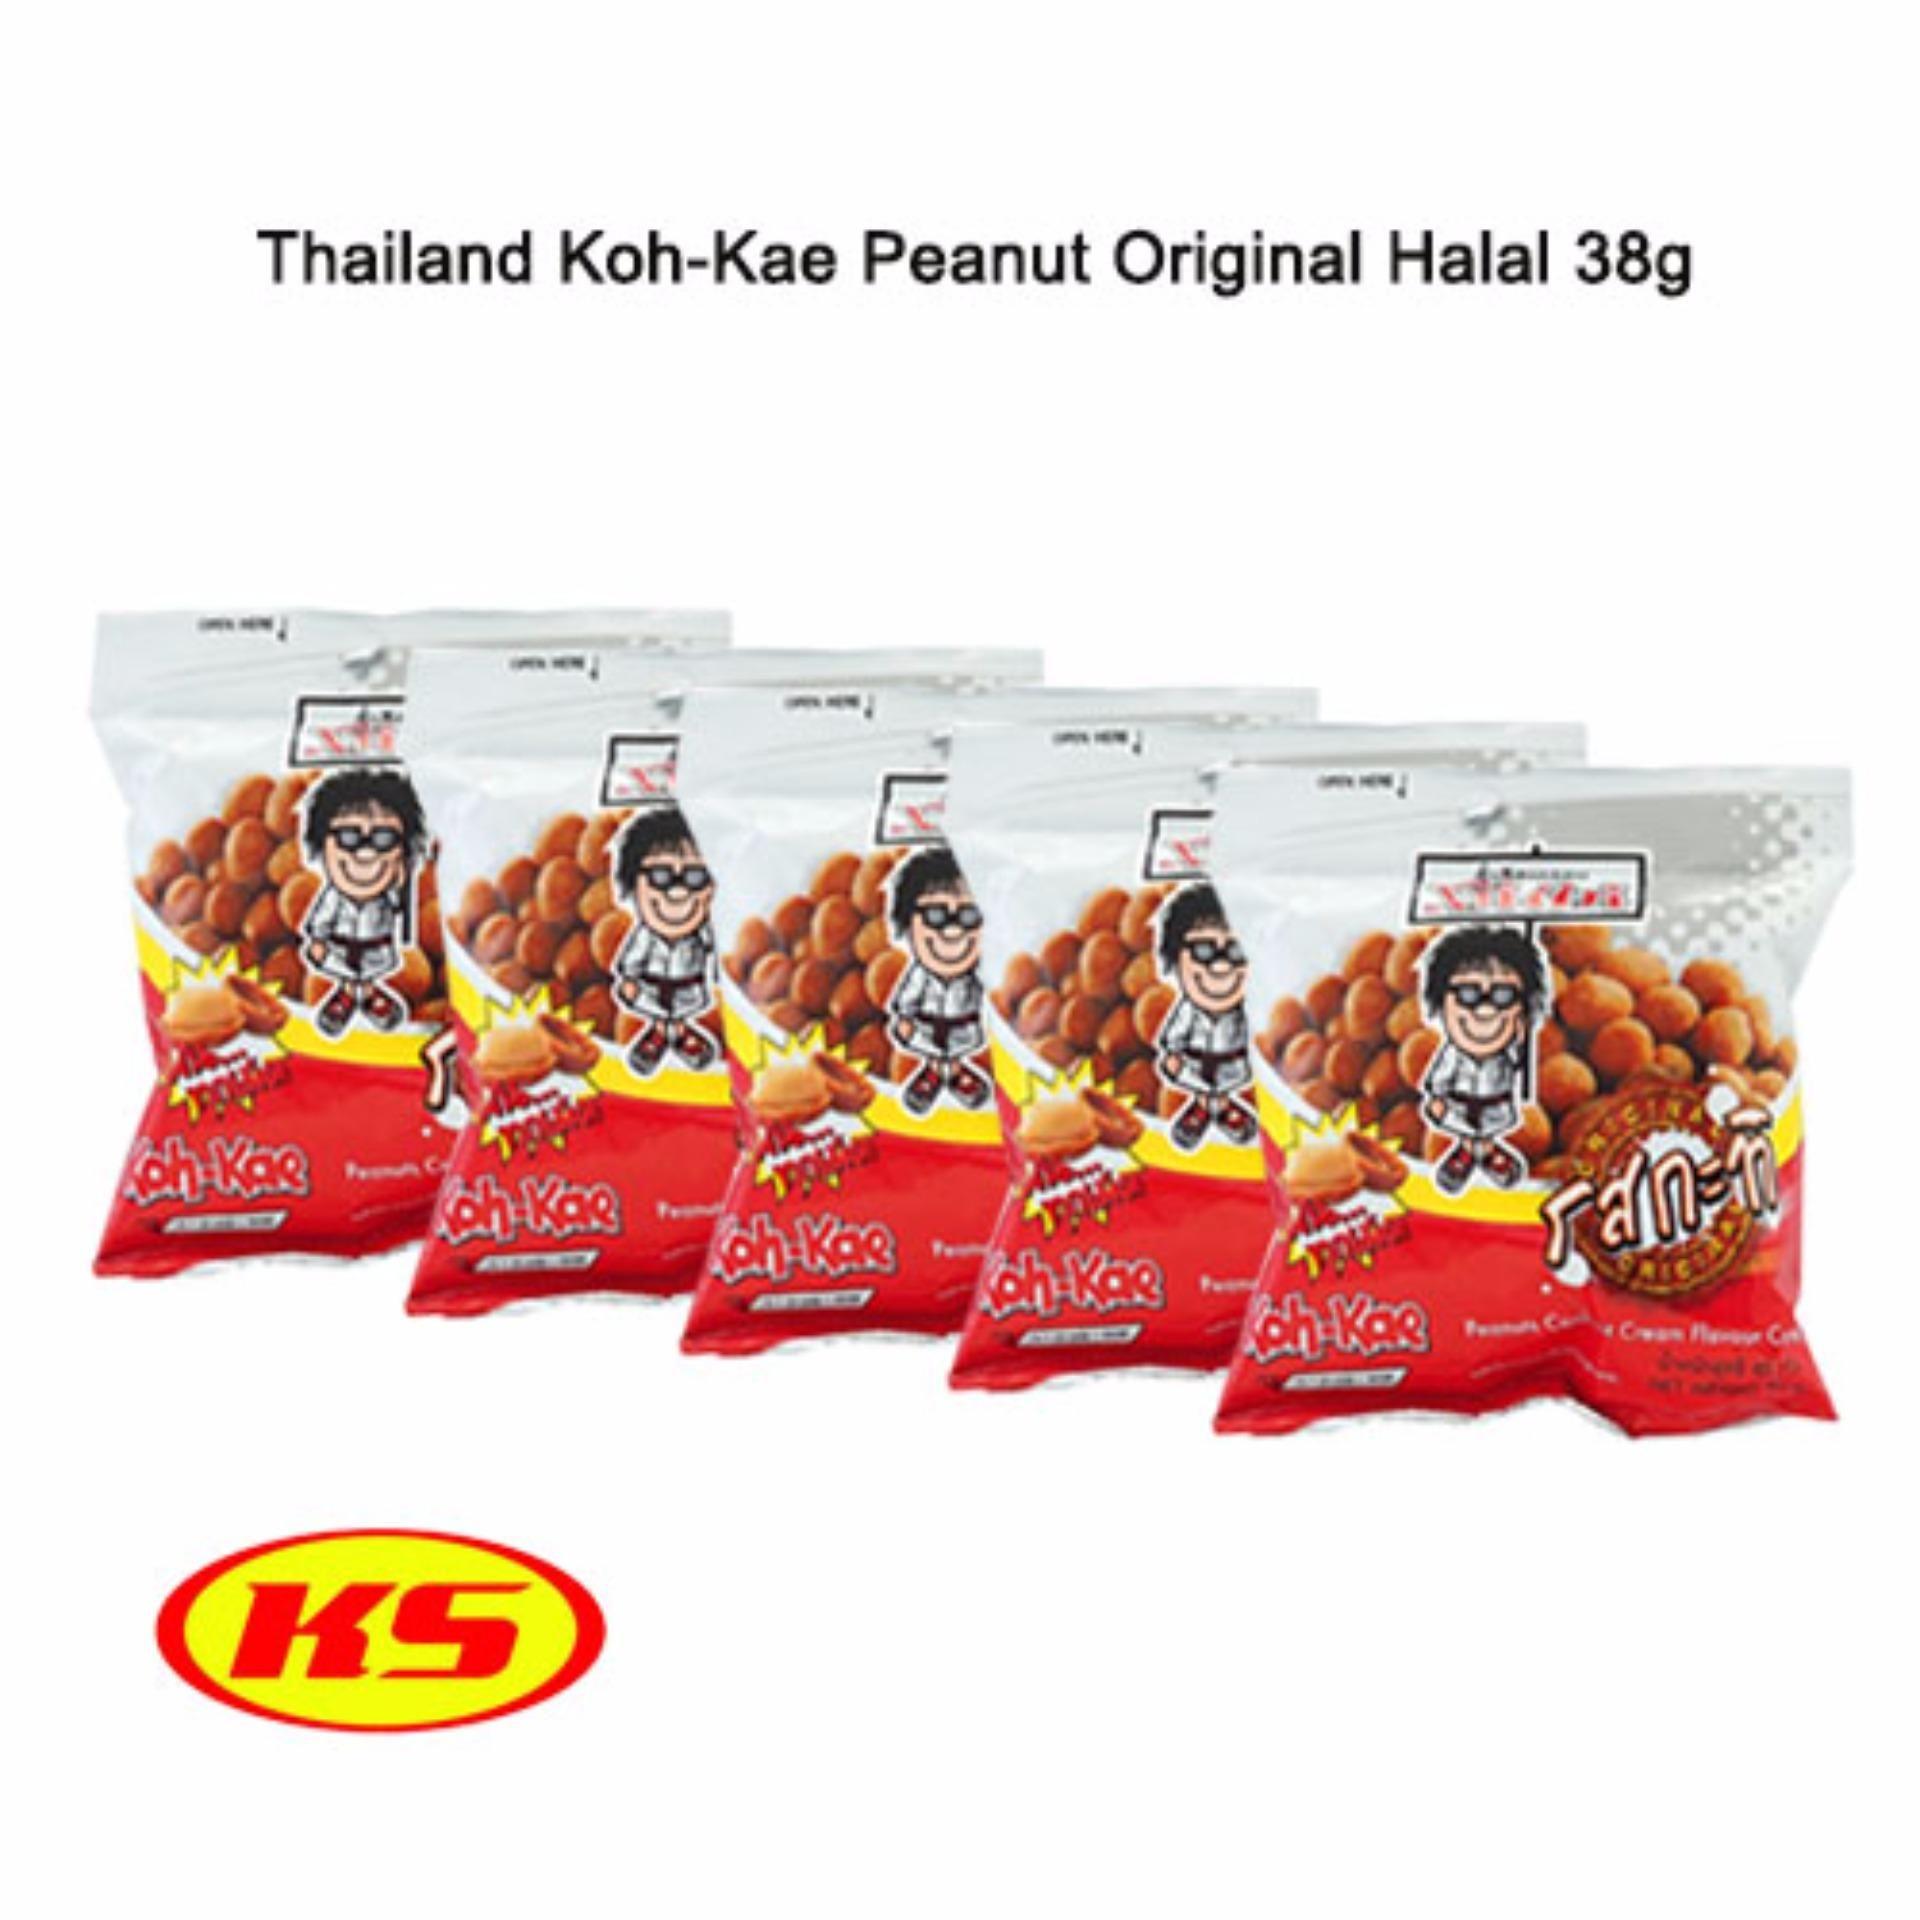 Koh-Kae Logo - 5pack) Thailand Koh Kae Peanut Coconut Original 38g